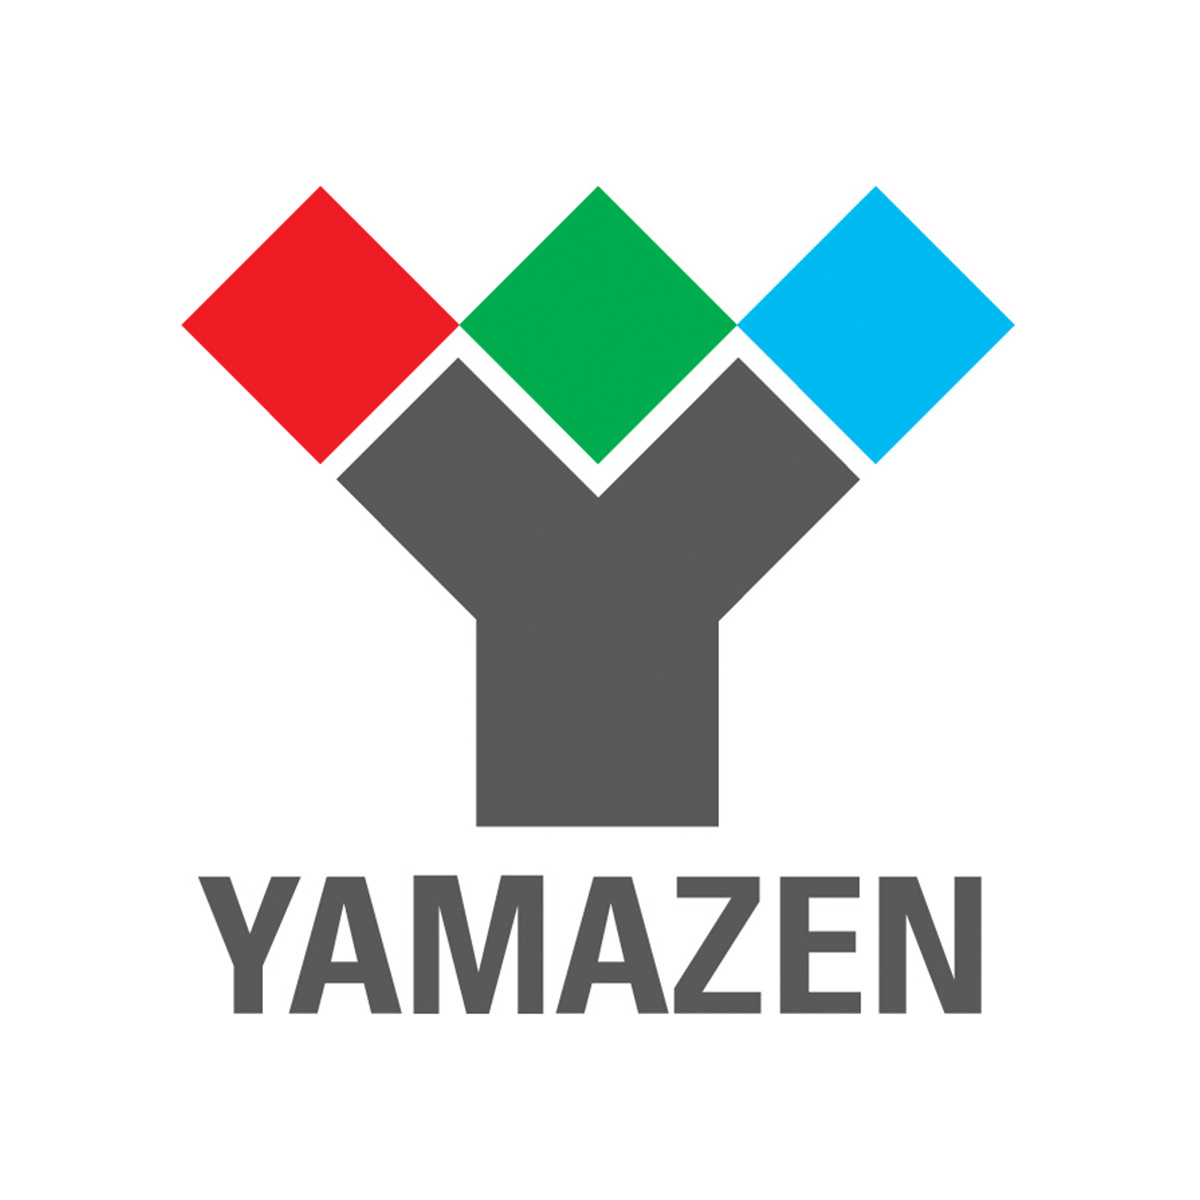 YAMAZEN 山善官方網站